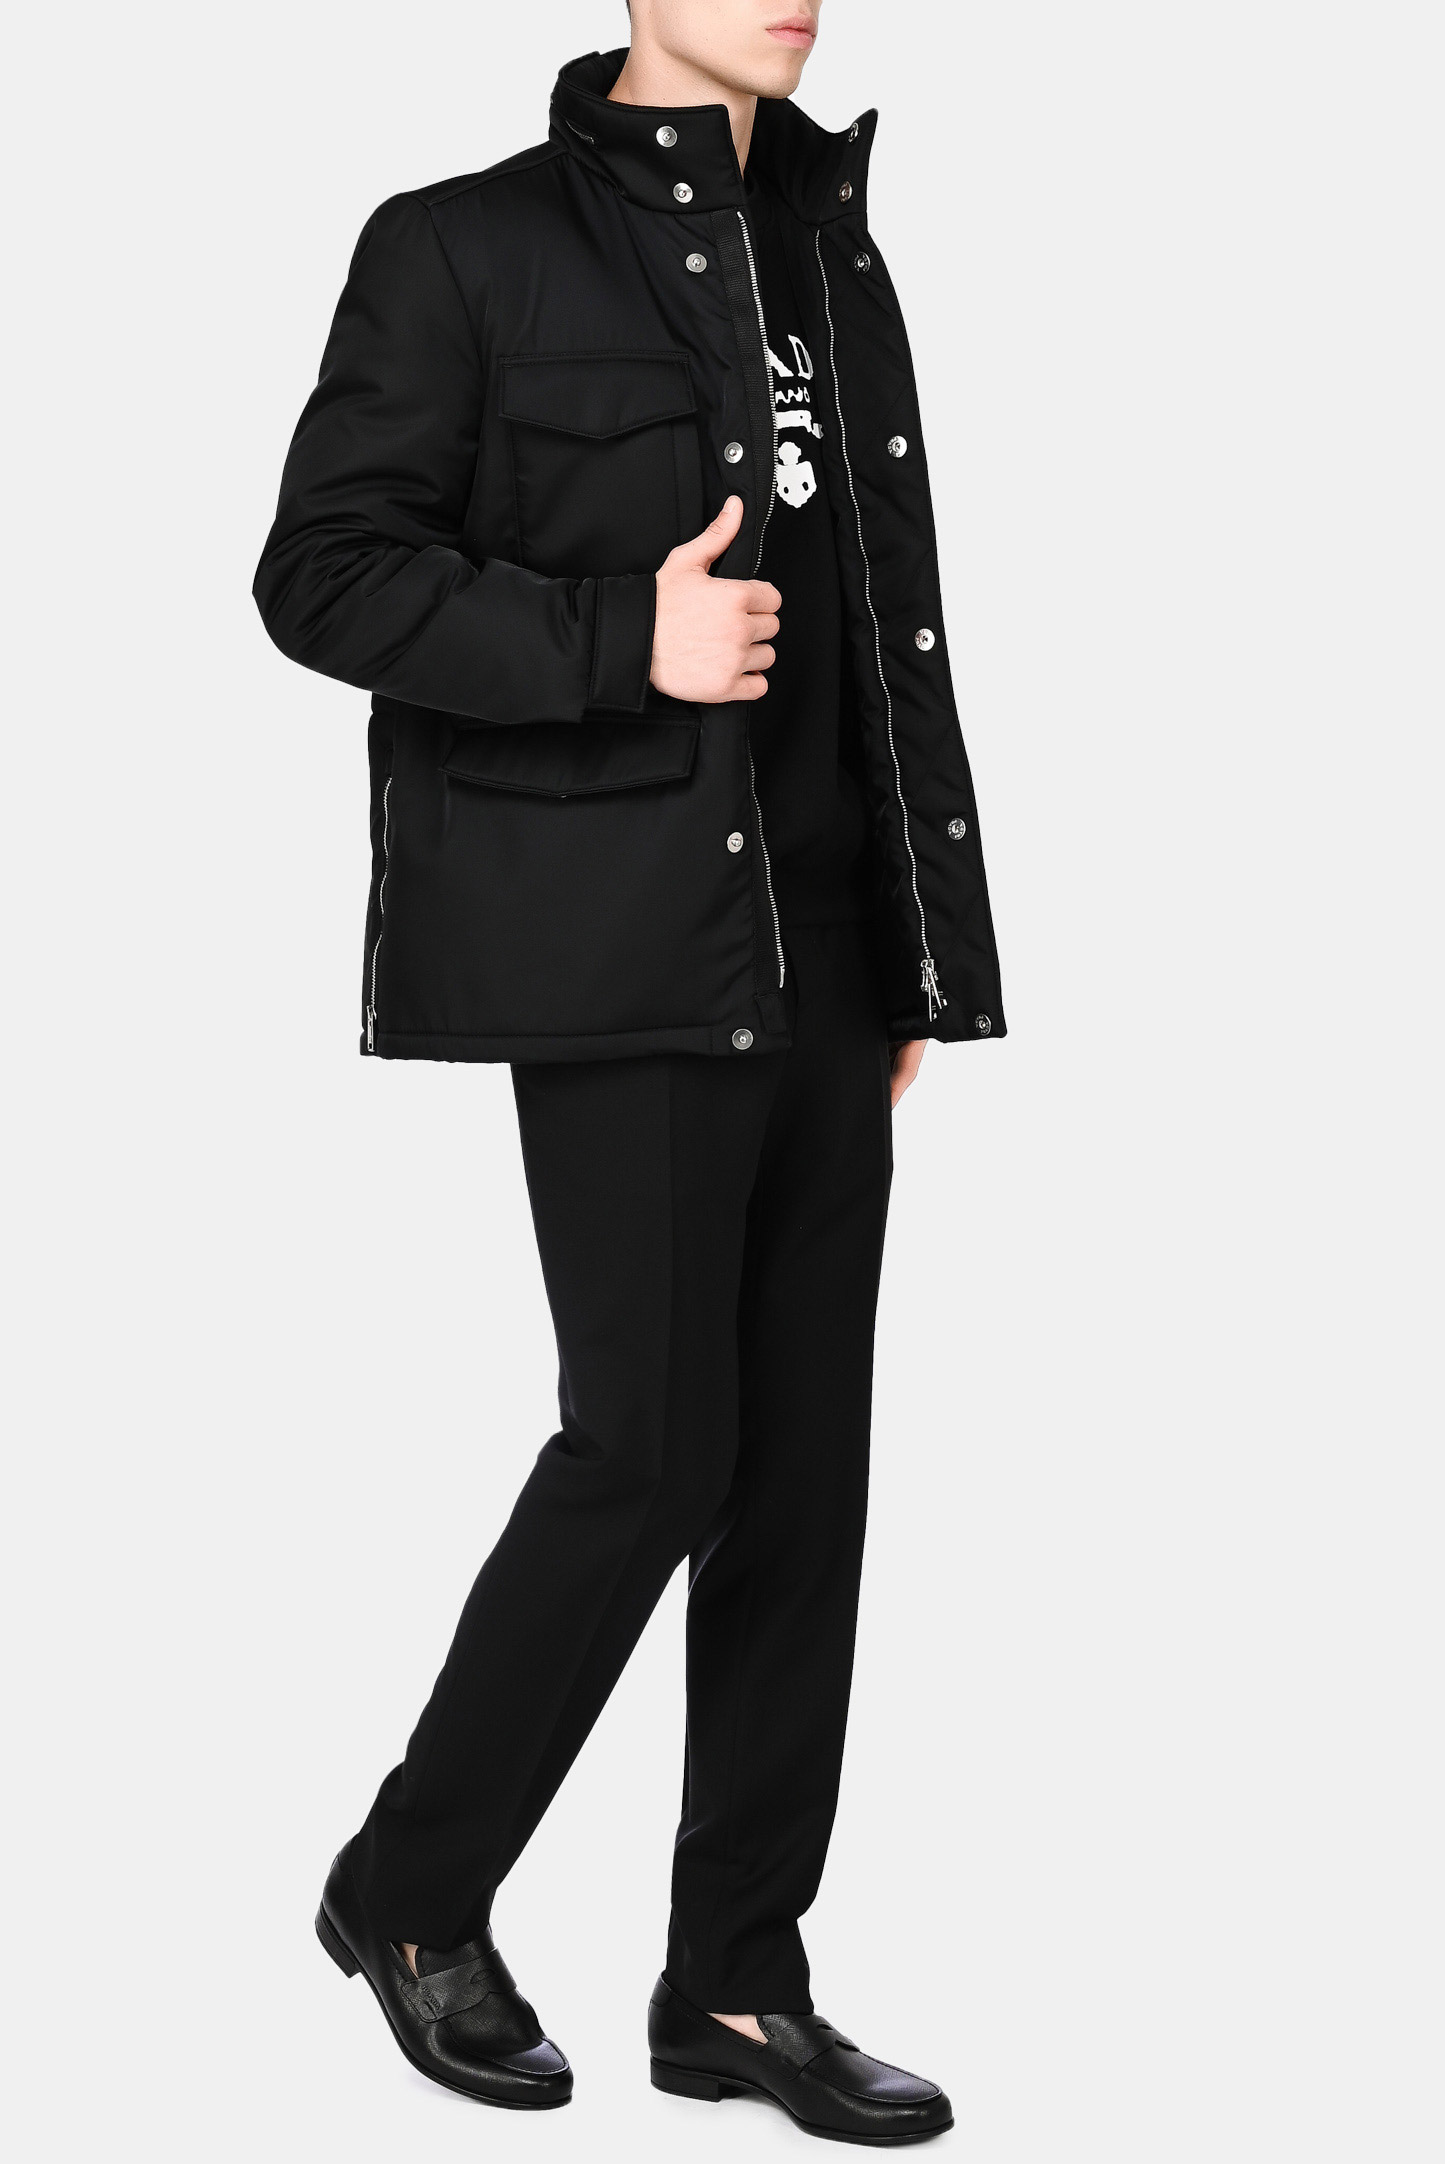 Куртка PRADA SGB784 1WQ8, цвет: Черный, Мужской